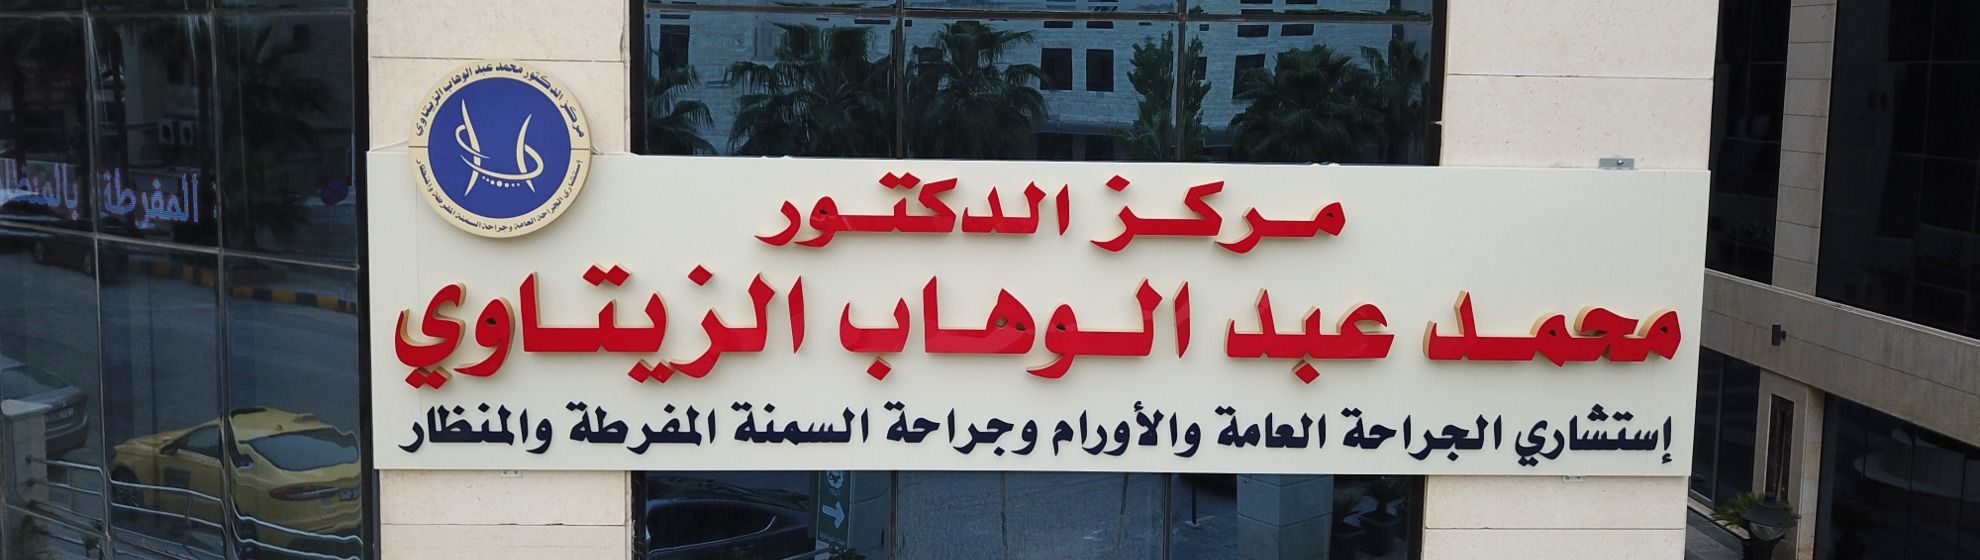 مركز د. محمد الزيتاوي